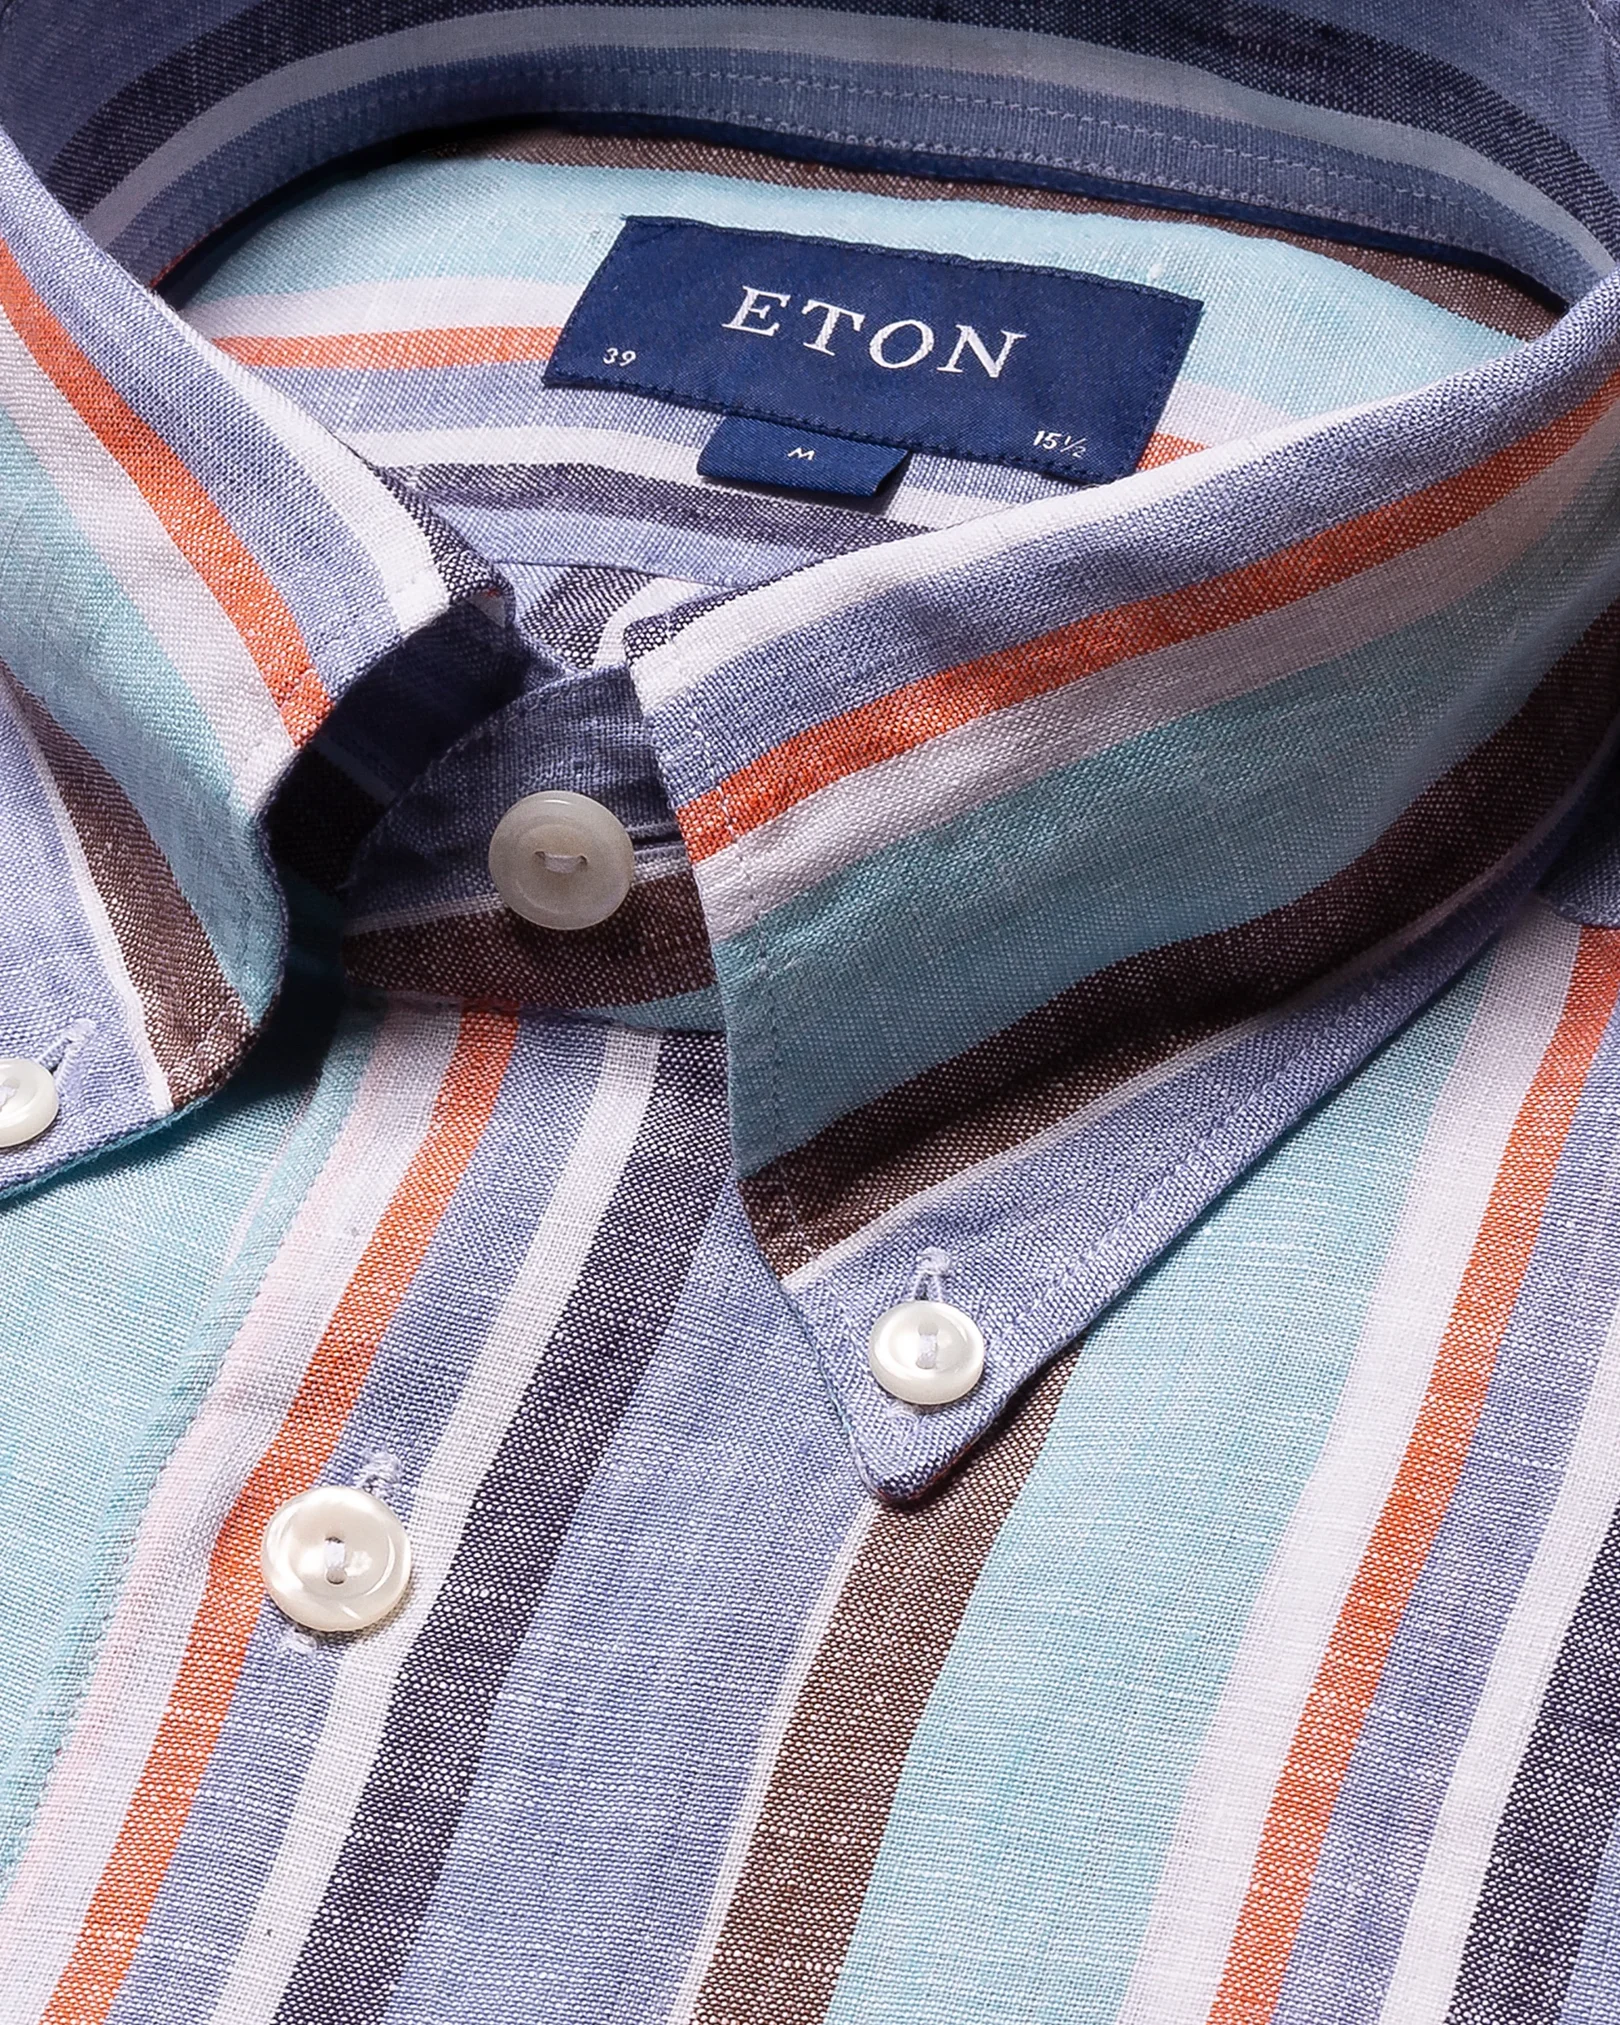 Eton - light blue bold striped linen shirt